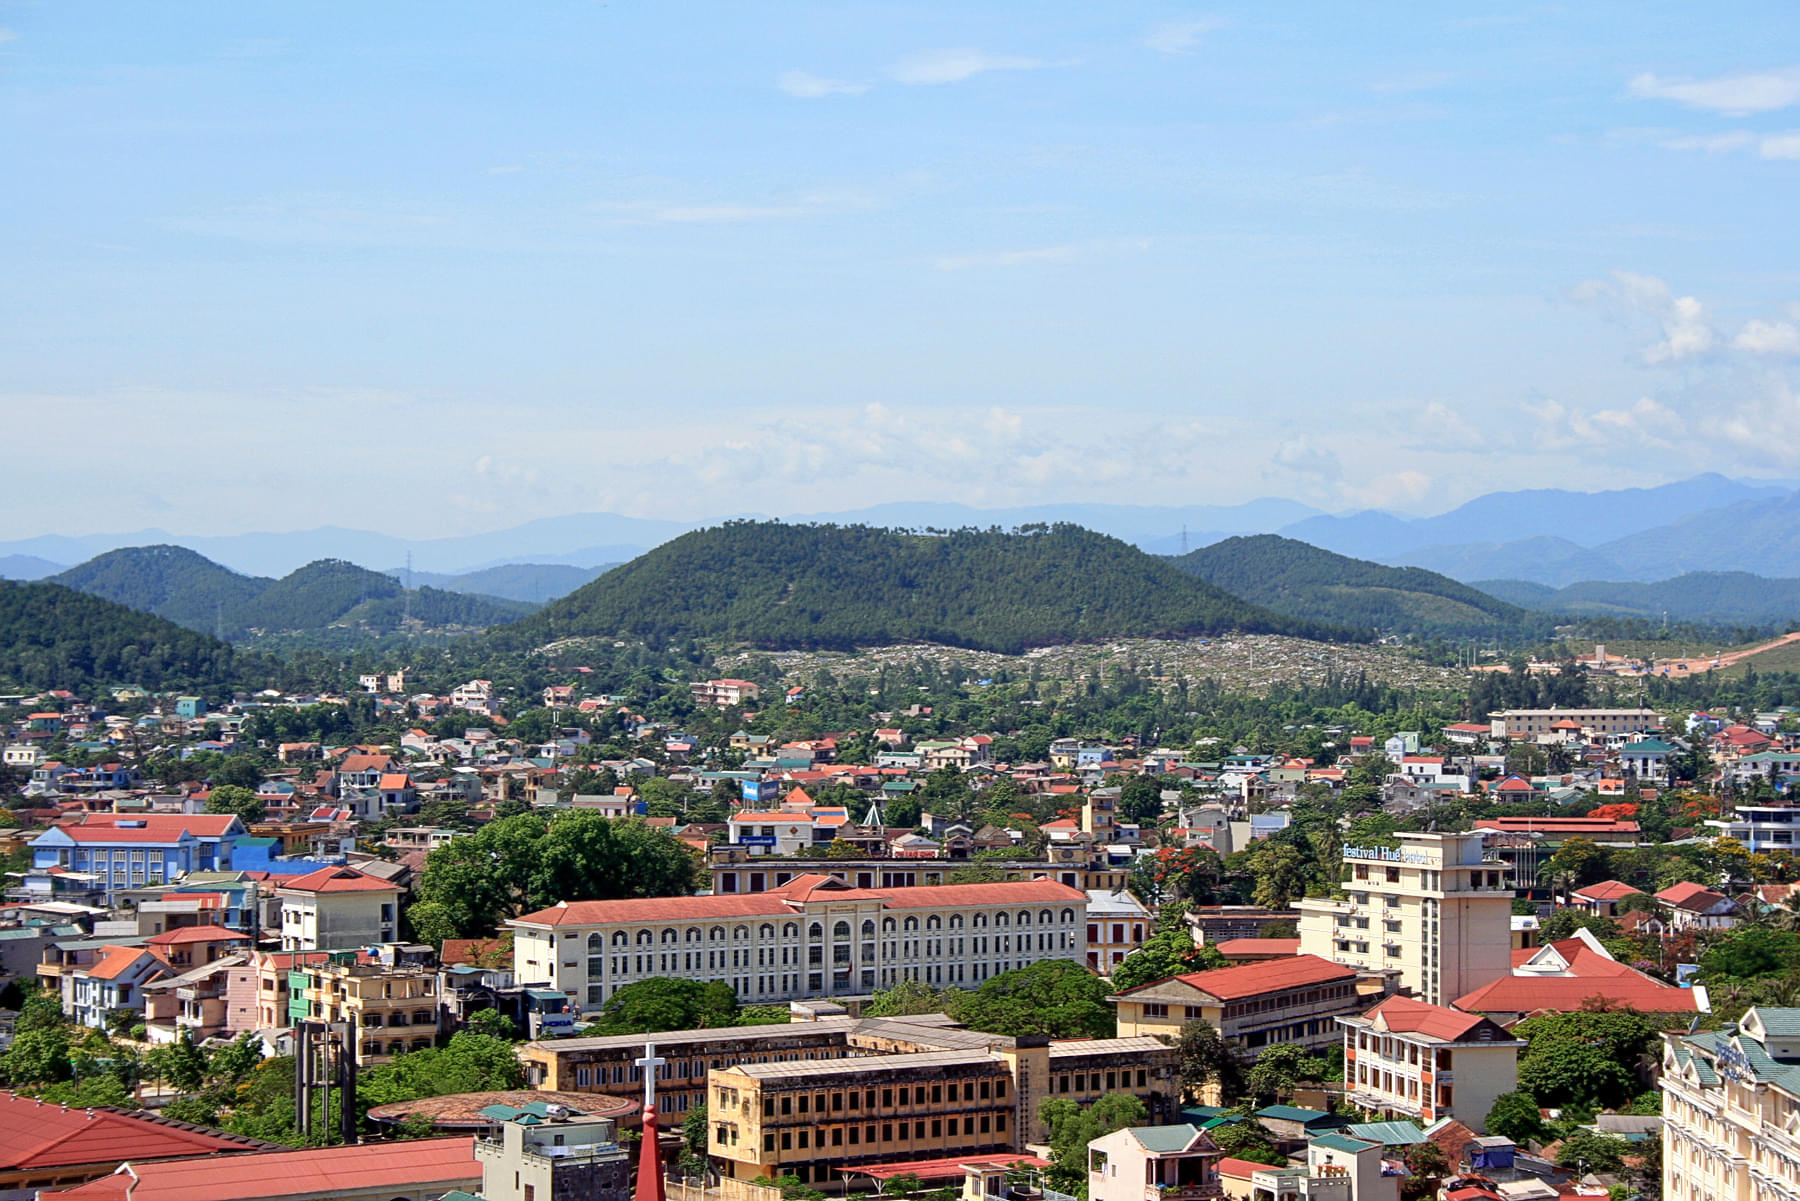 Mount Ngu Binh Overview